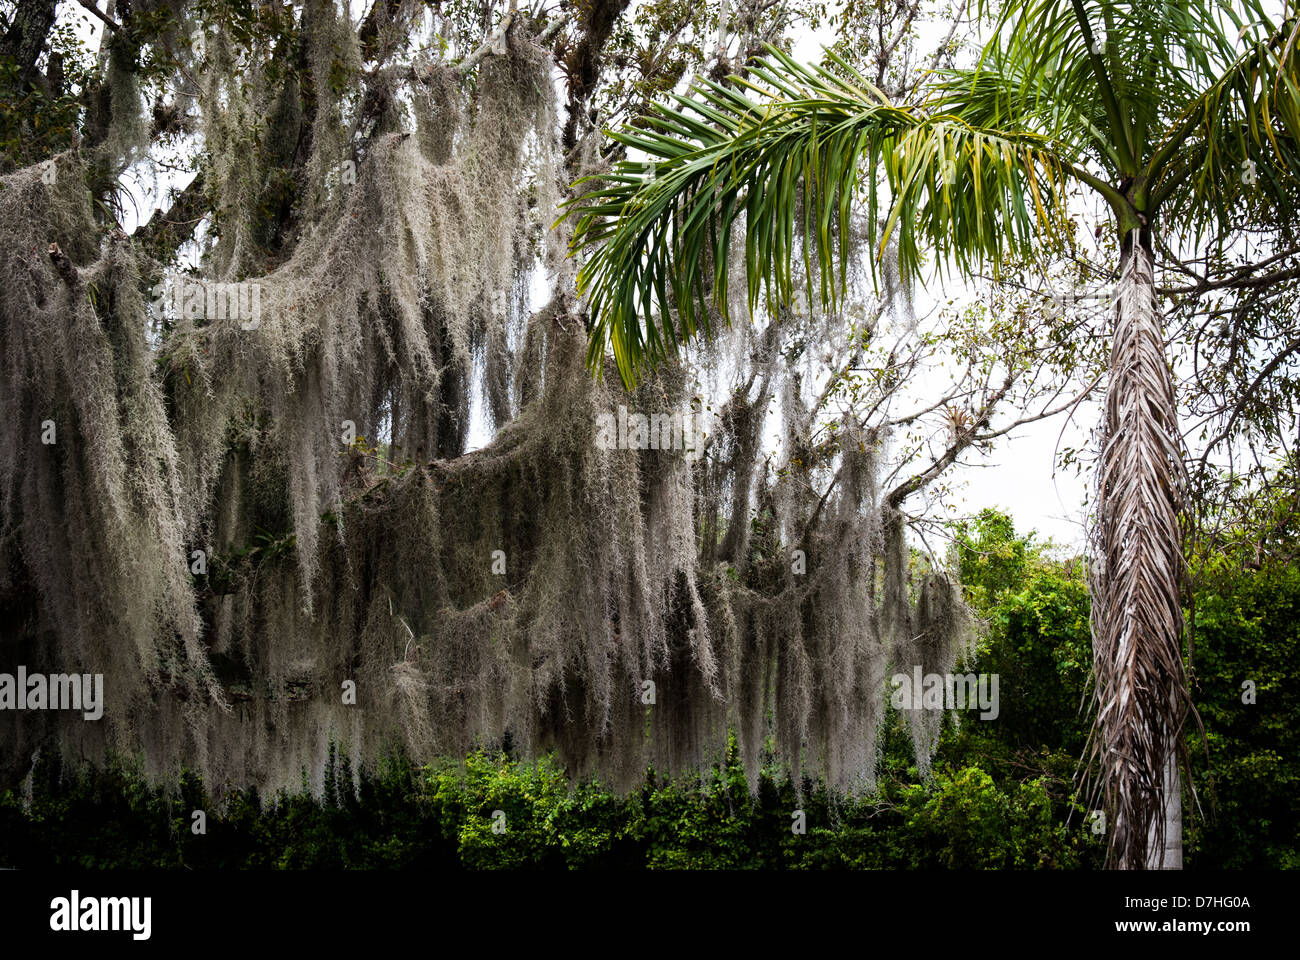 Spanish moss hangs from a tree in swampland Louisiana bayou, USA Stock Photo